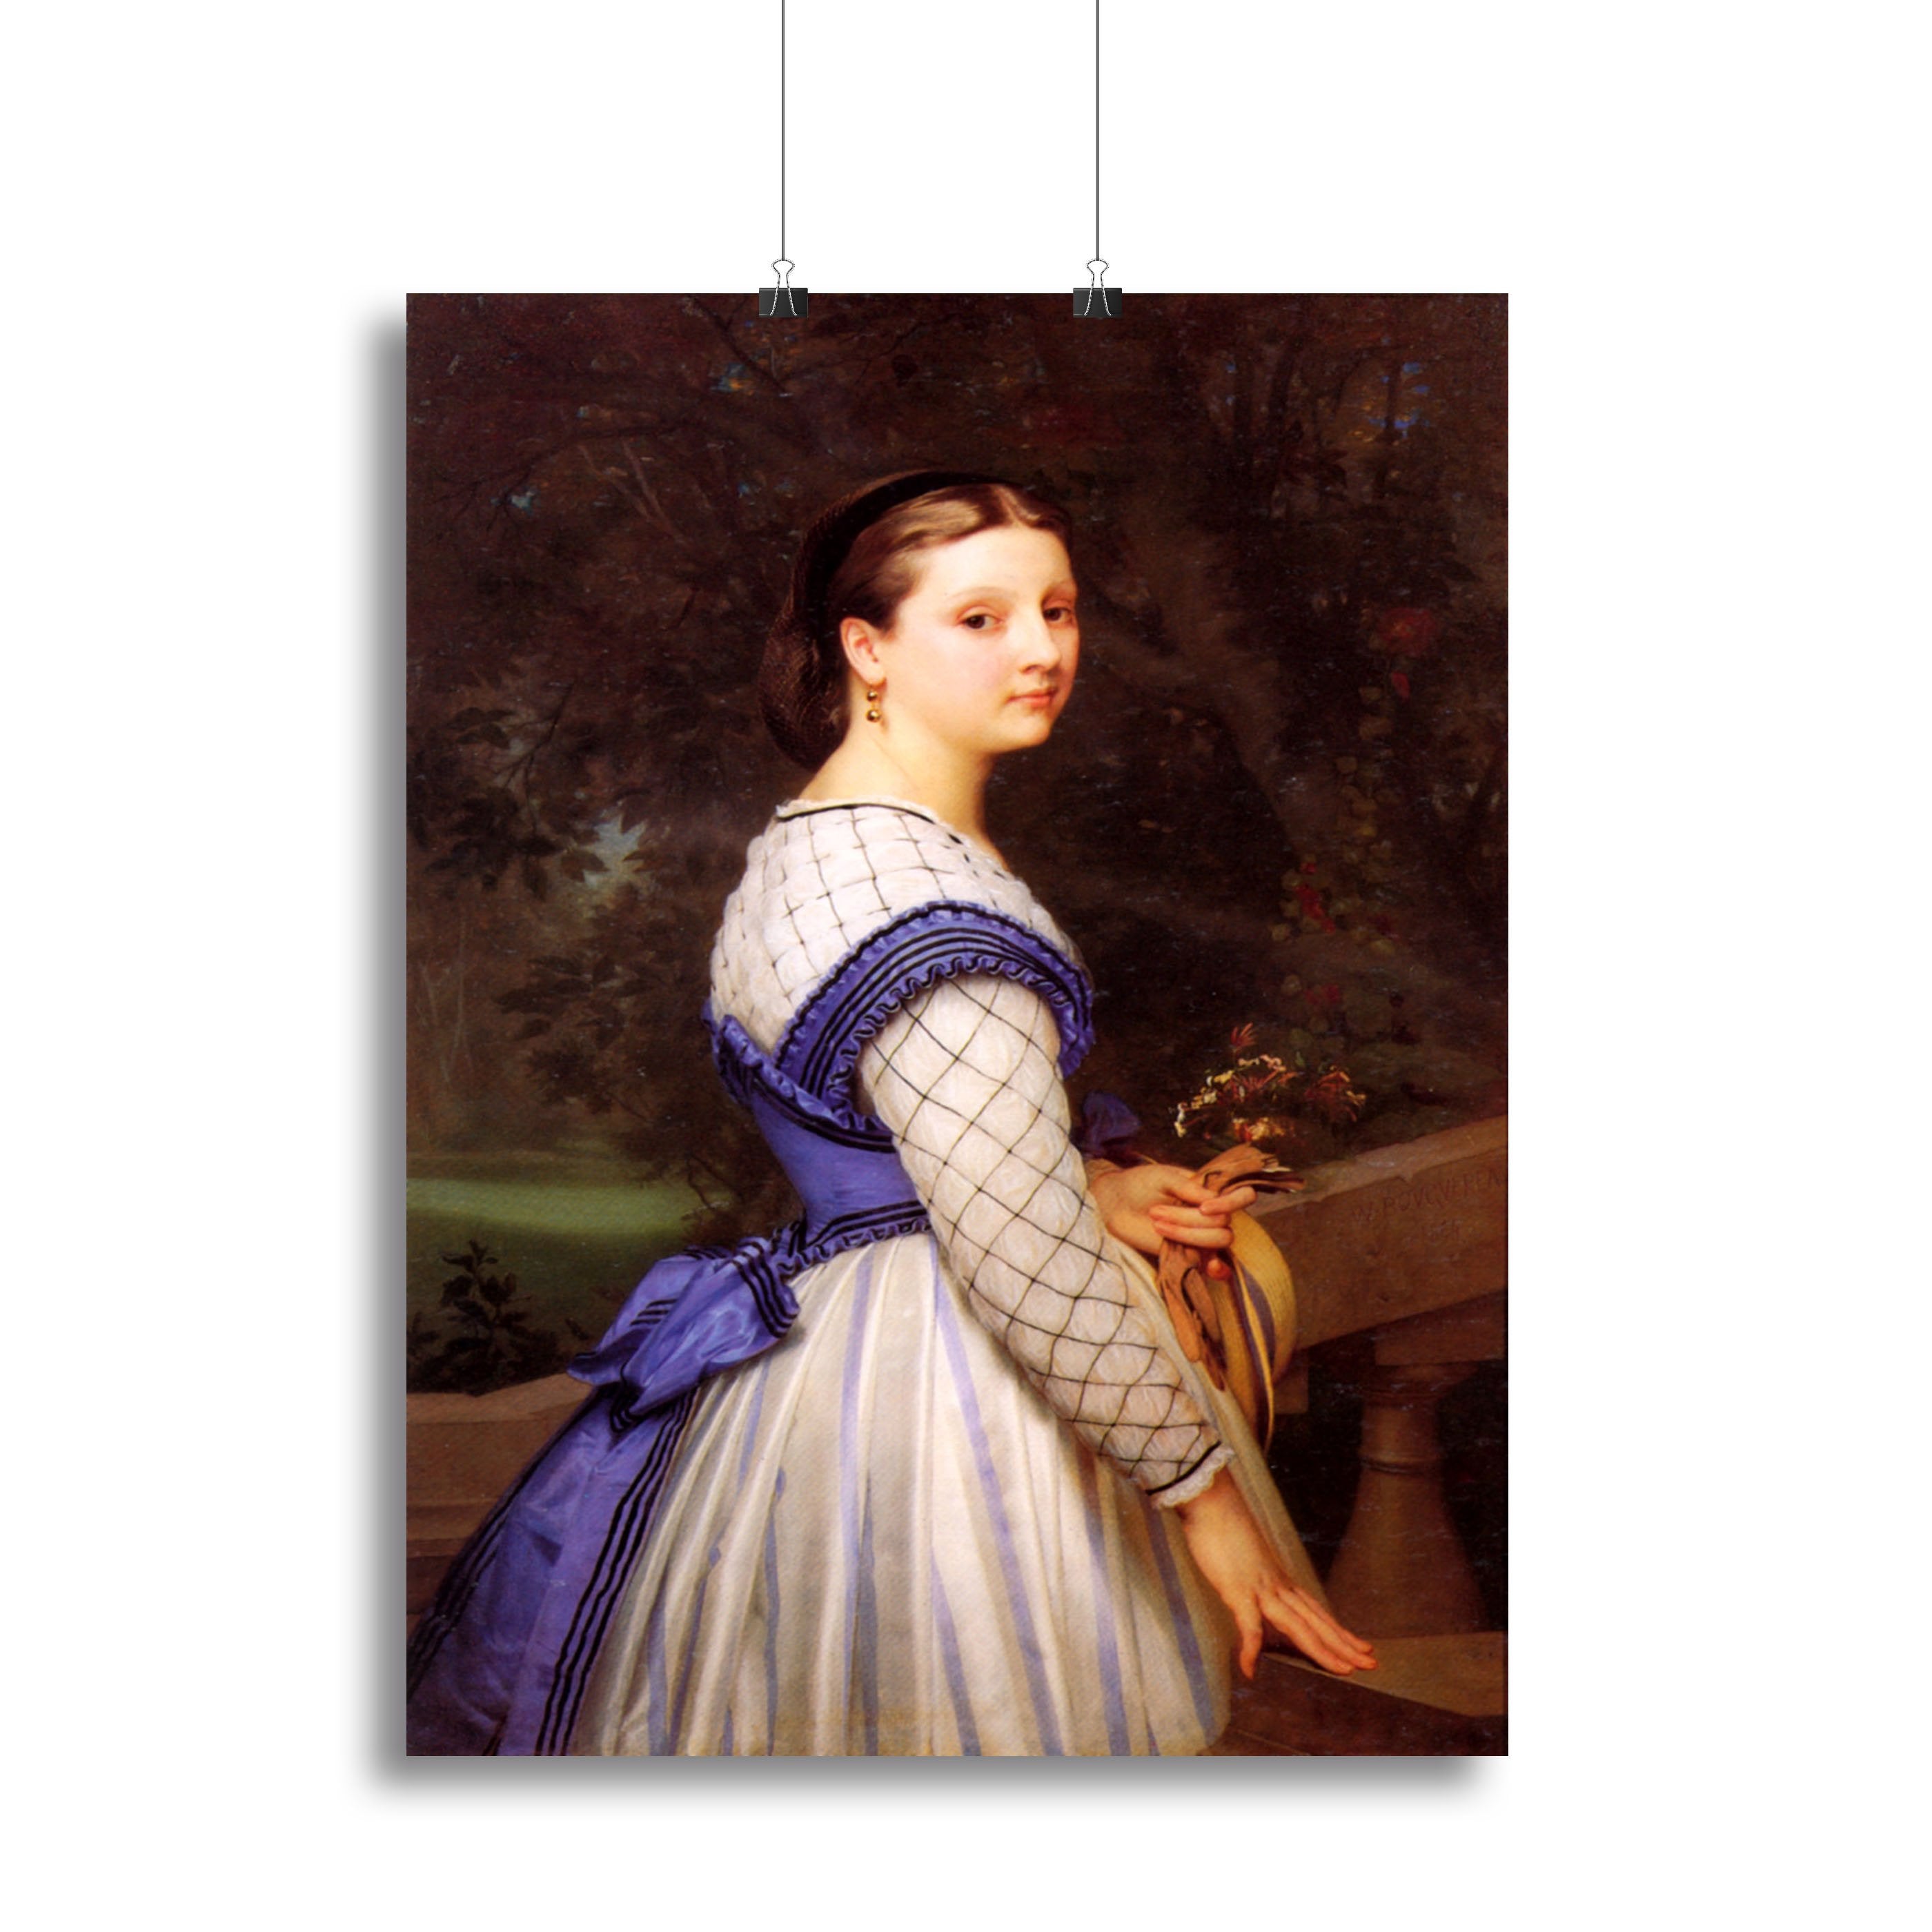 The Countess de Montholon By Bouguereau Canvas Print or Poster